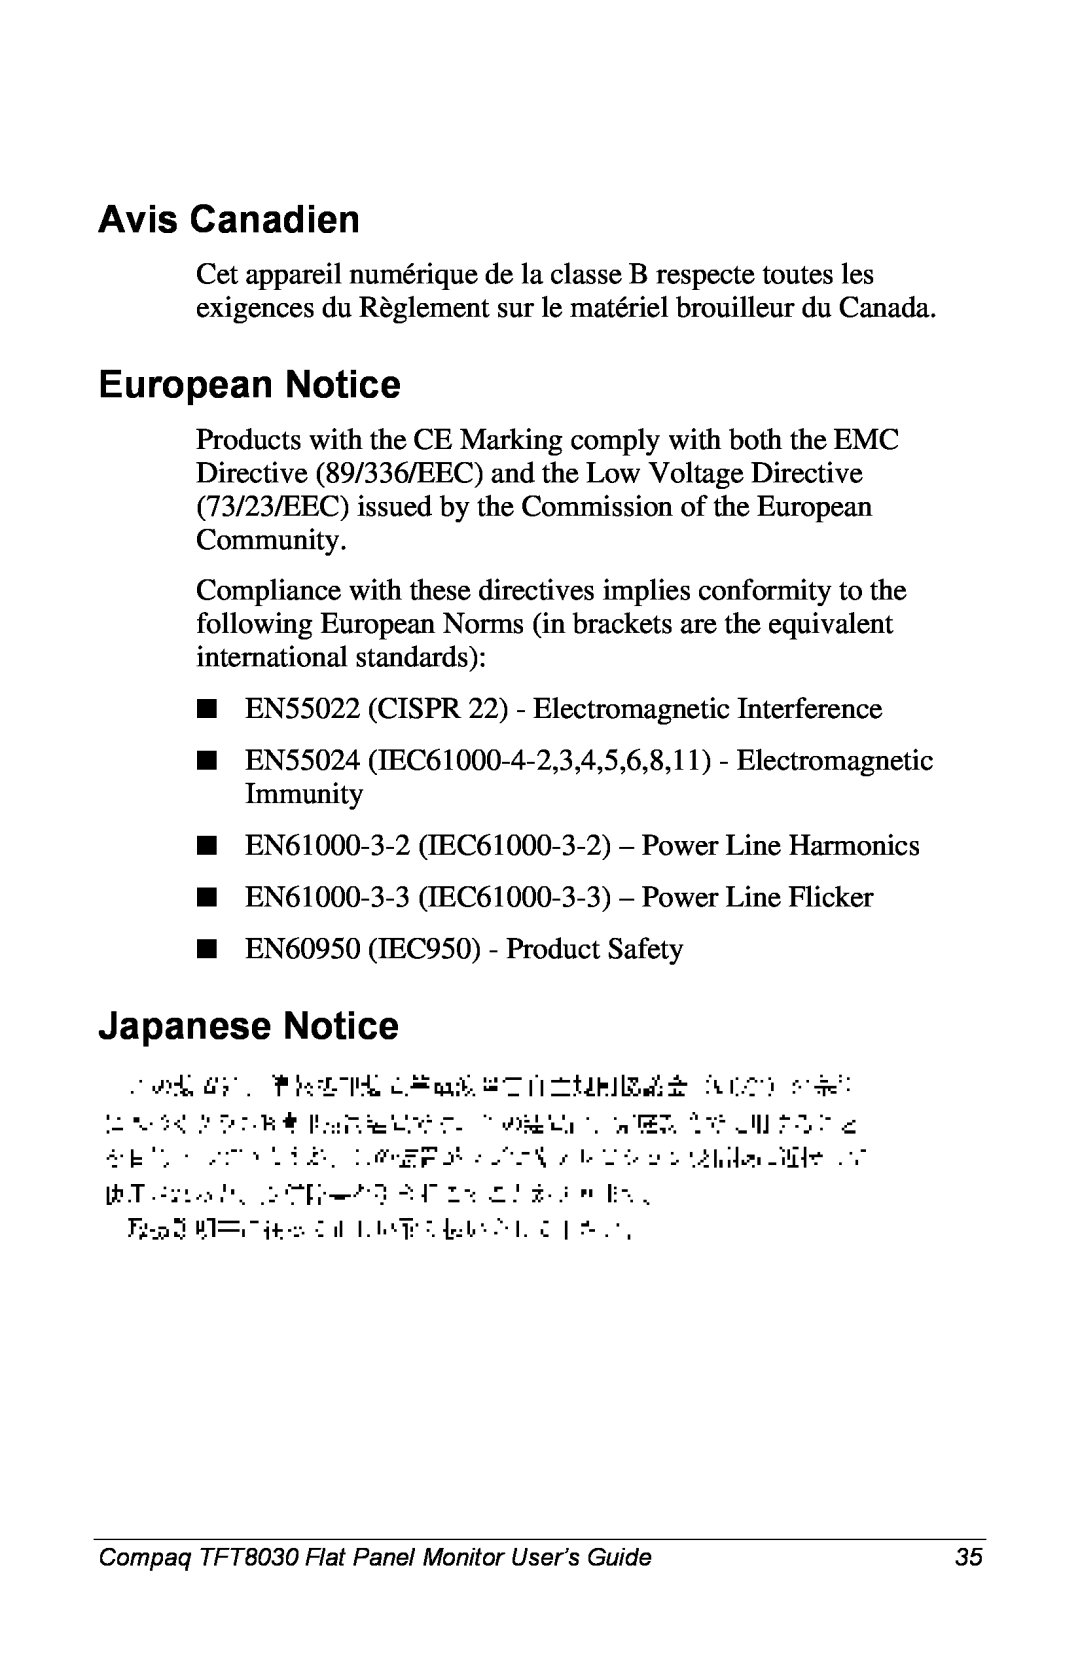 Compaq 8030 manual Avis Canadien, European Notice, Japanese Notice 